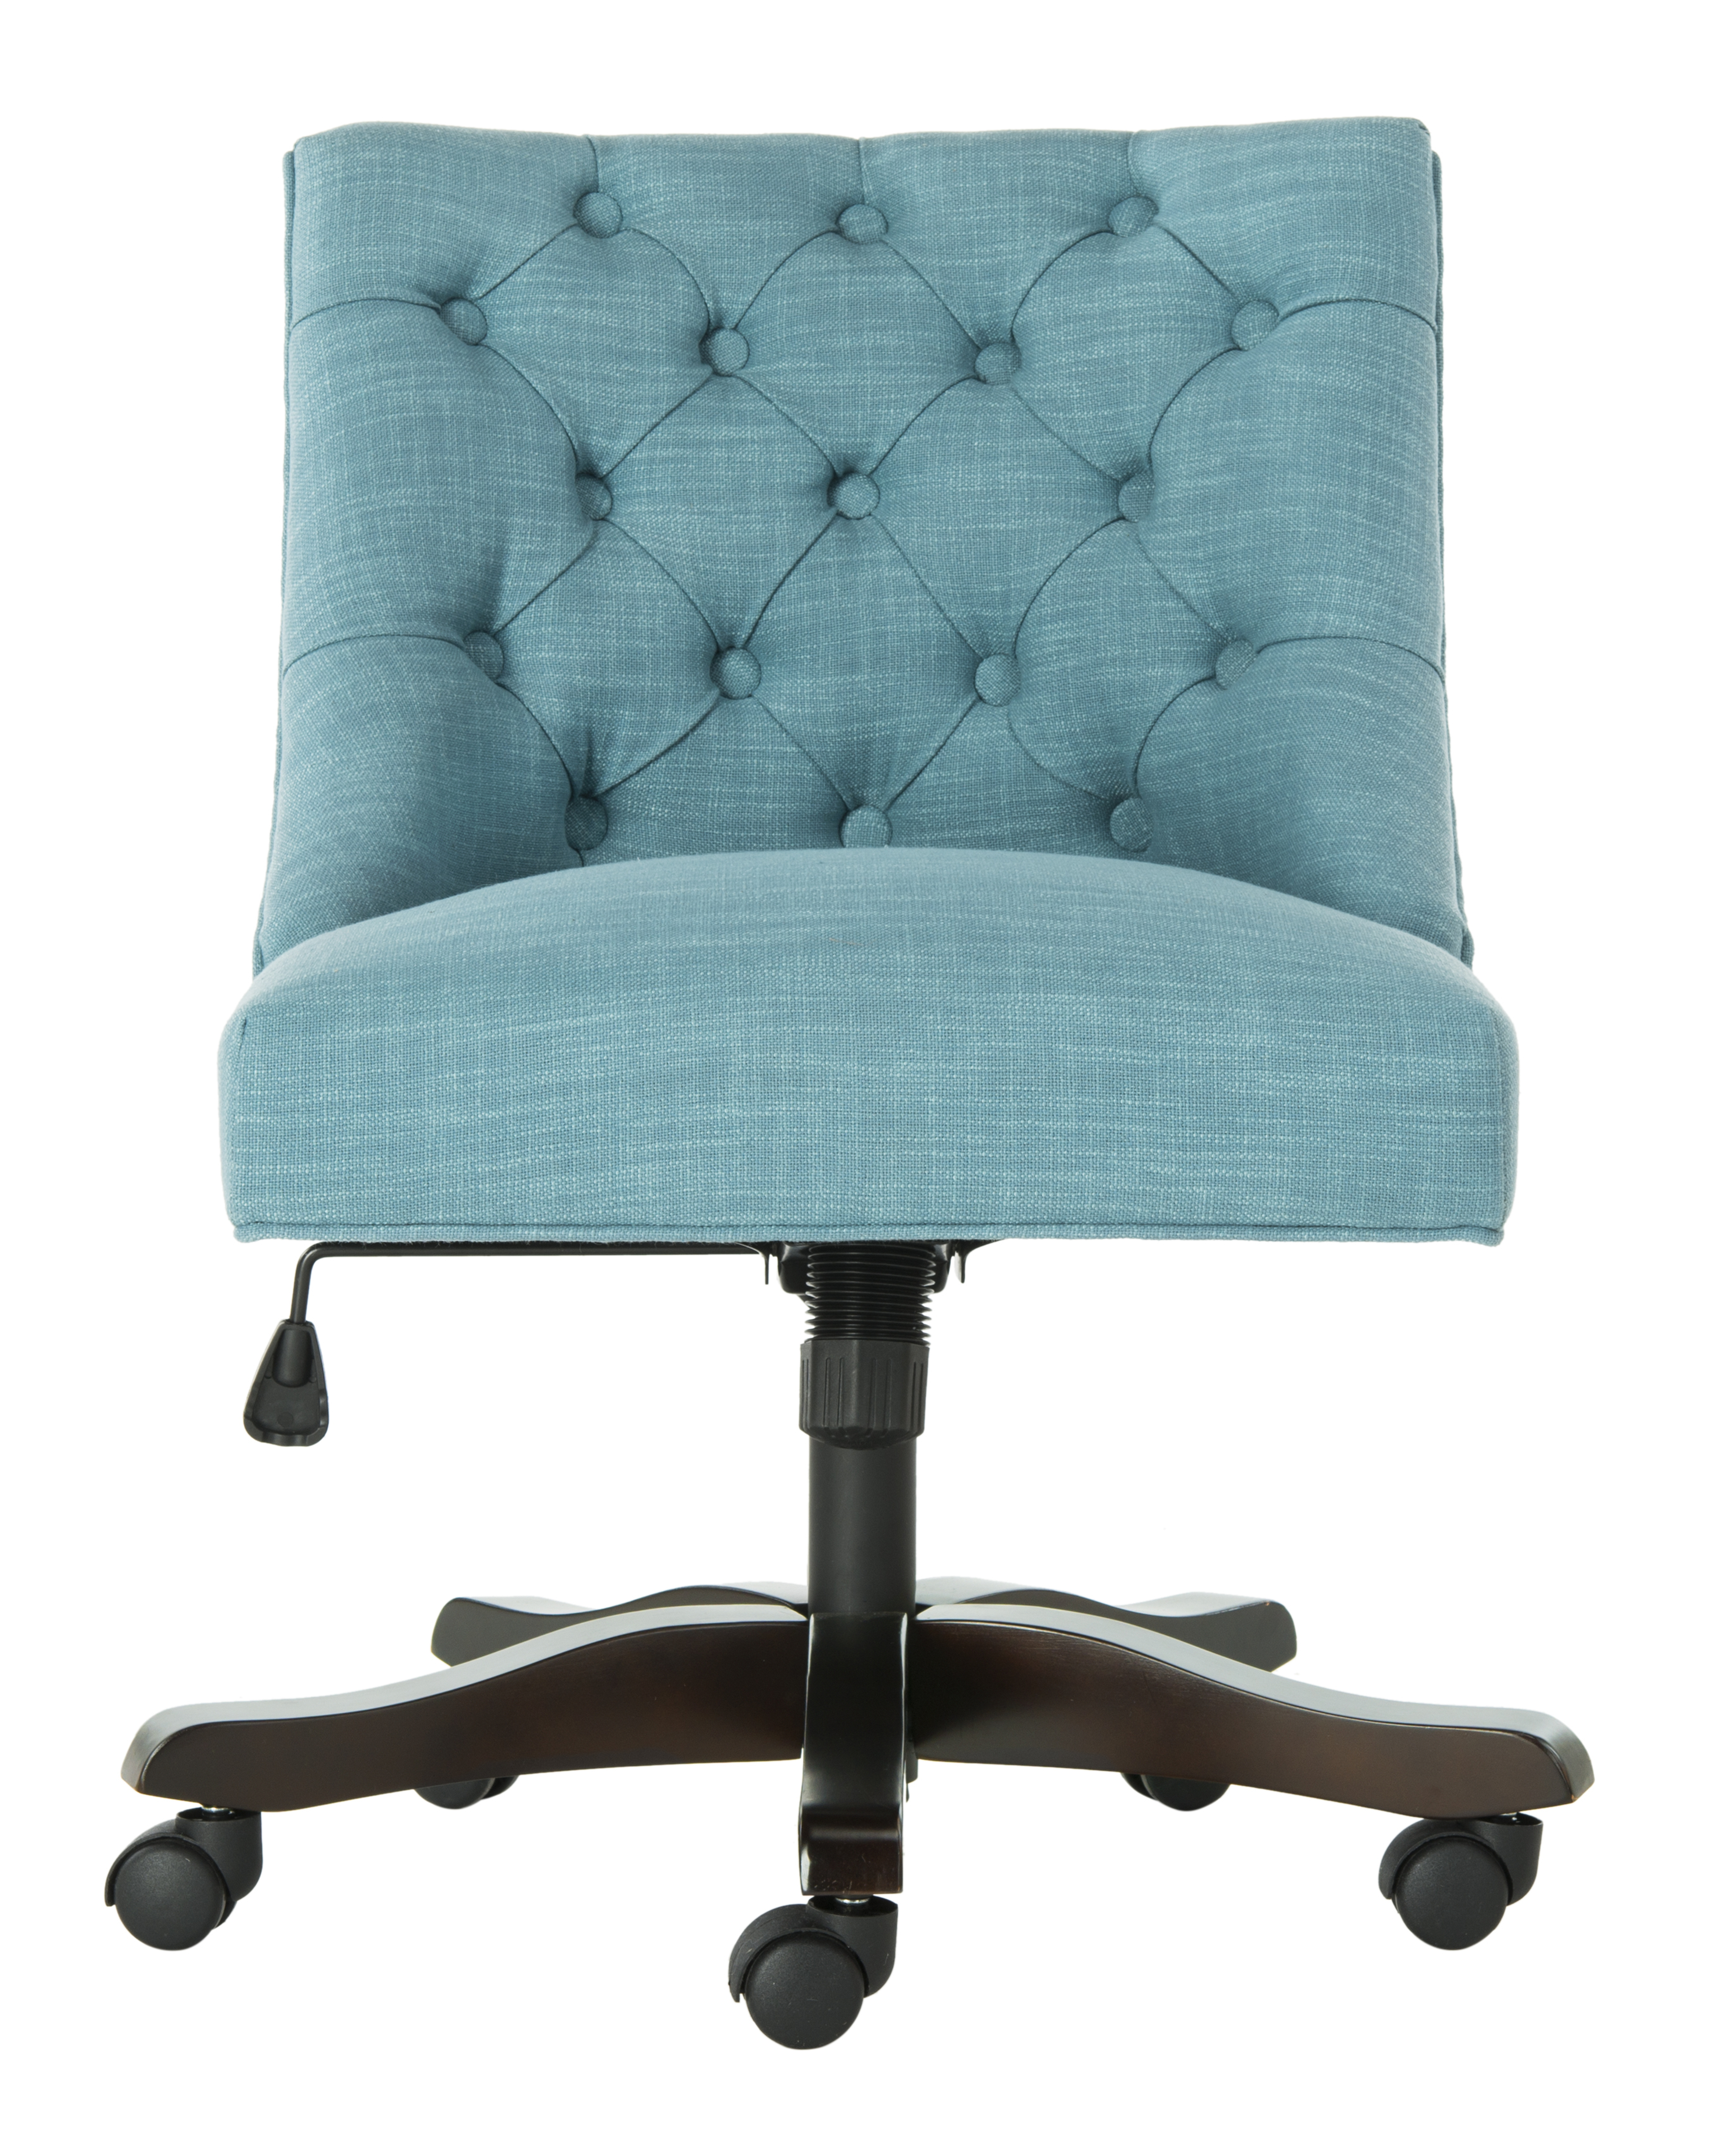 Soho Tufted Linen Swivel Desk Chair - Light Blue - Arlo Home - Arlo Home